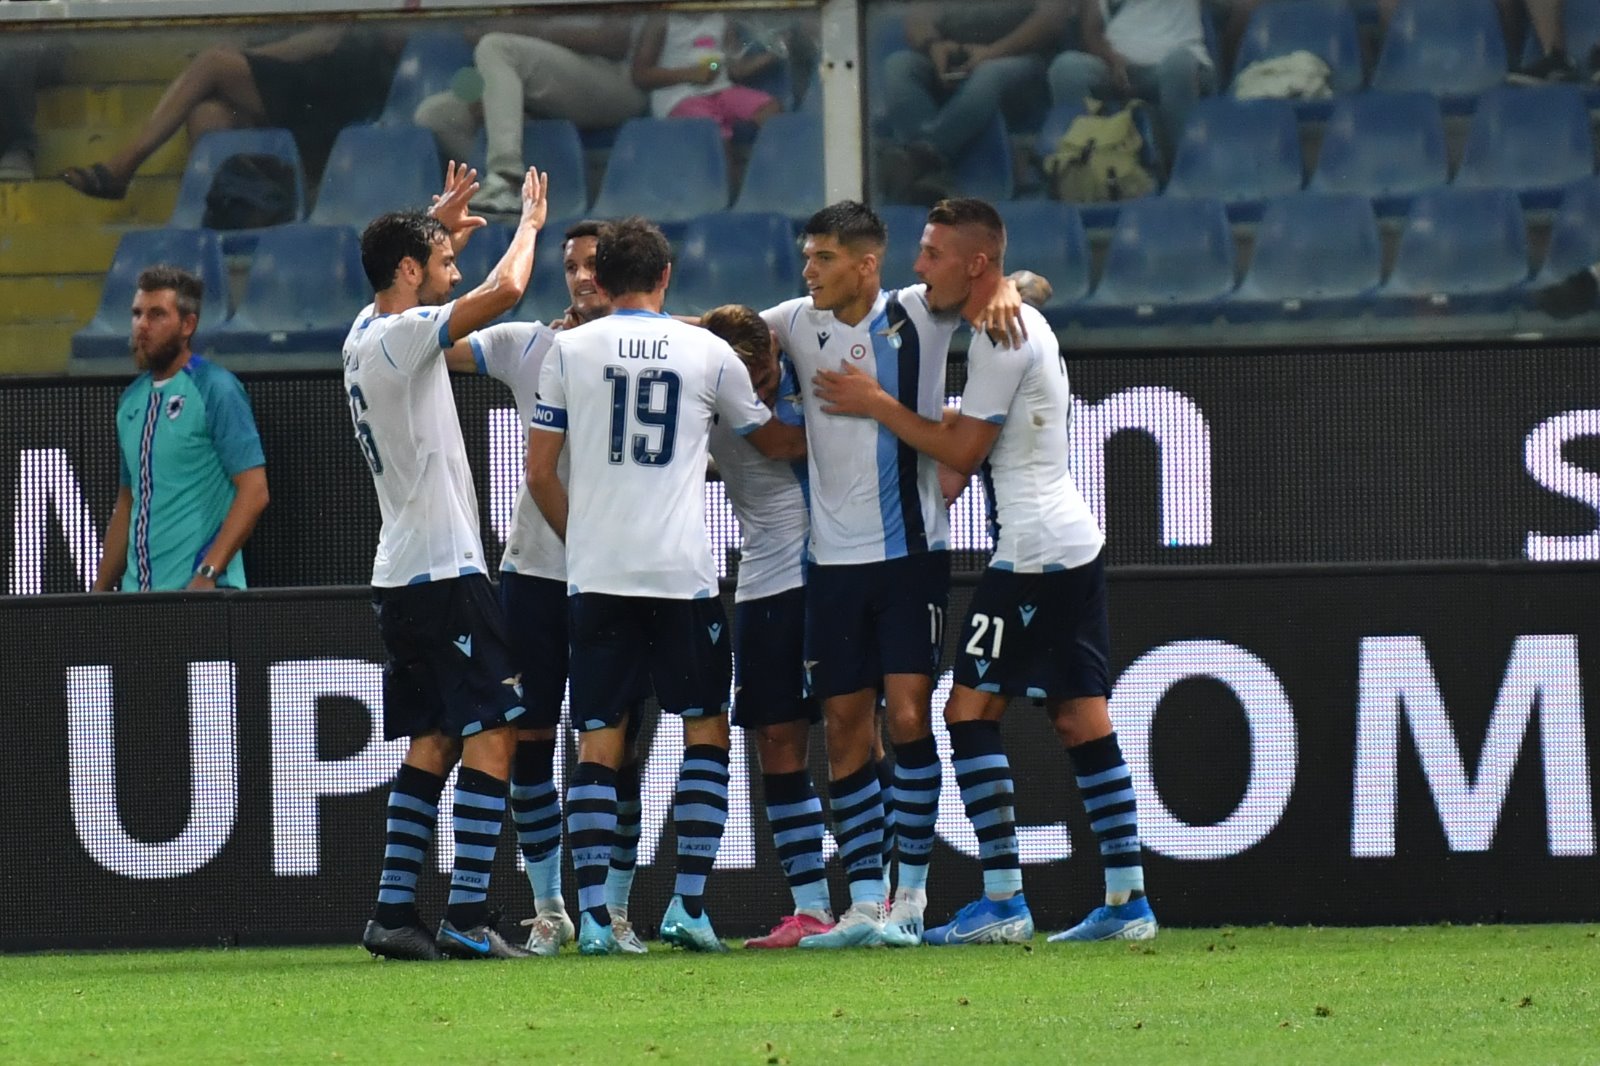 Serie A, FOTOGALLERY | Sampdoria-Lazio 0-3, il match negli scatti di ANTONIO FRAIOLI